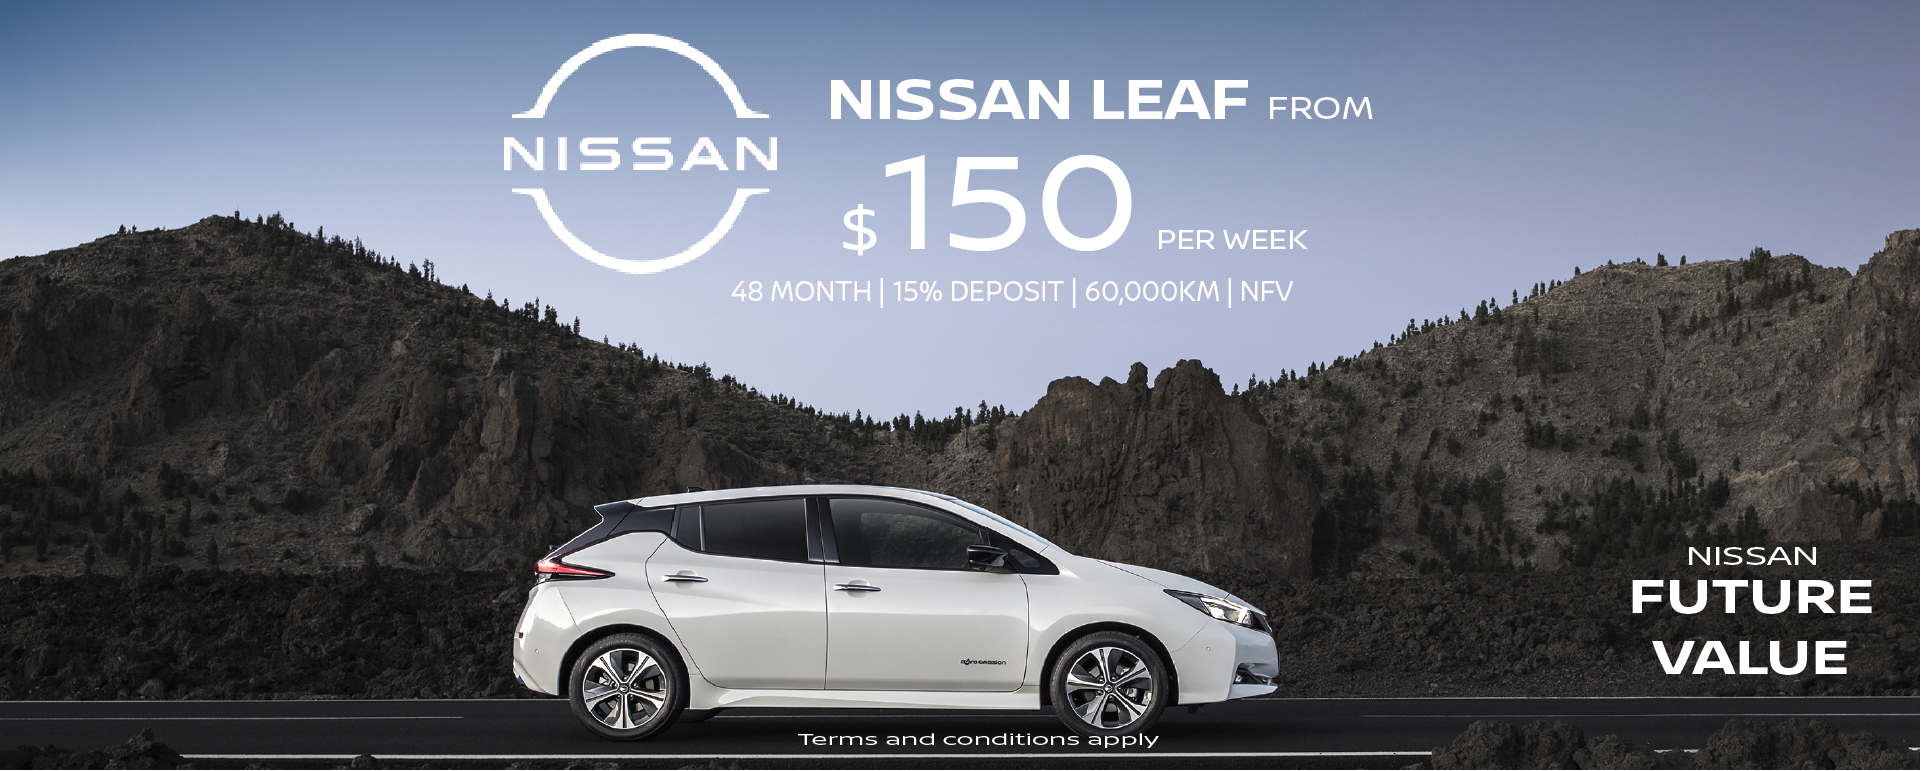 Nissan Future Value Leaf